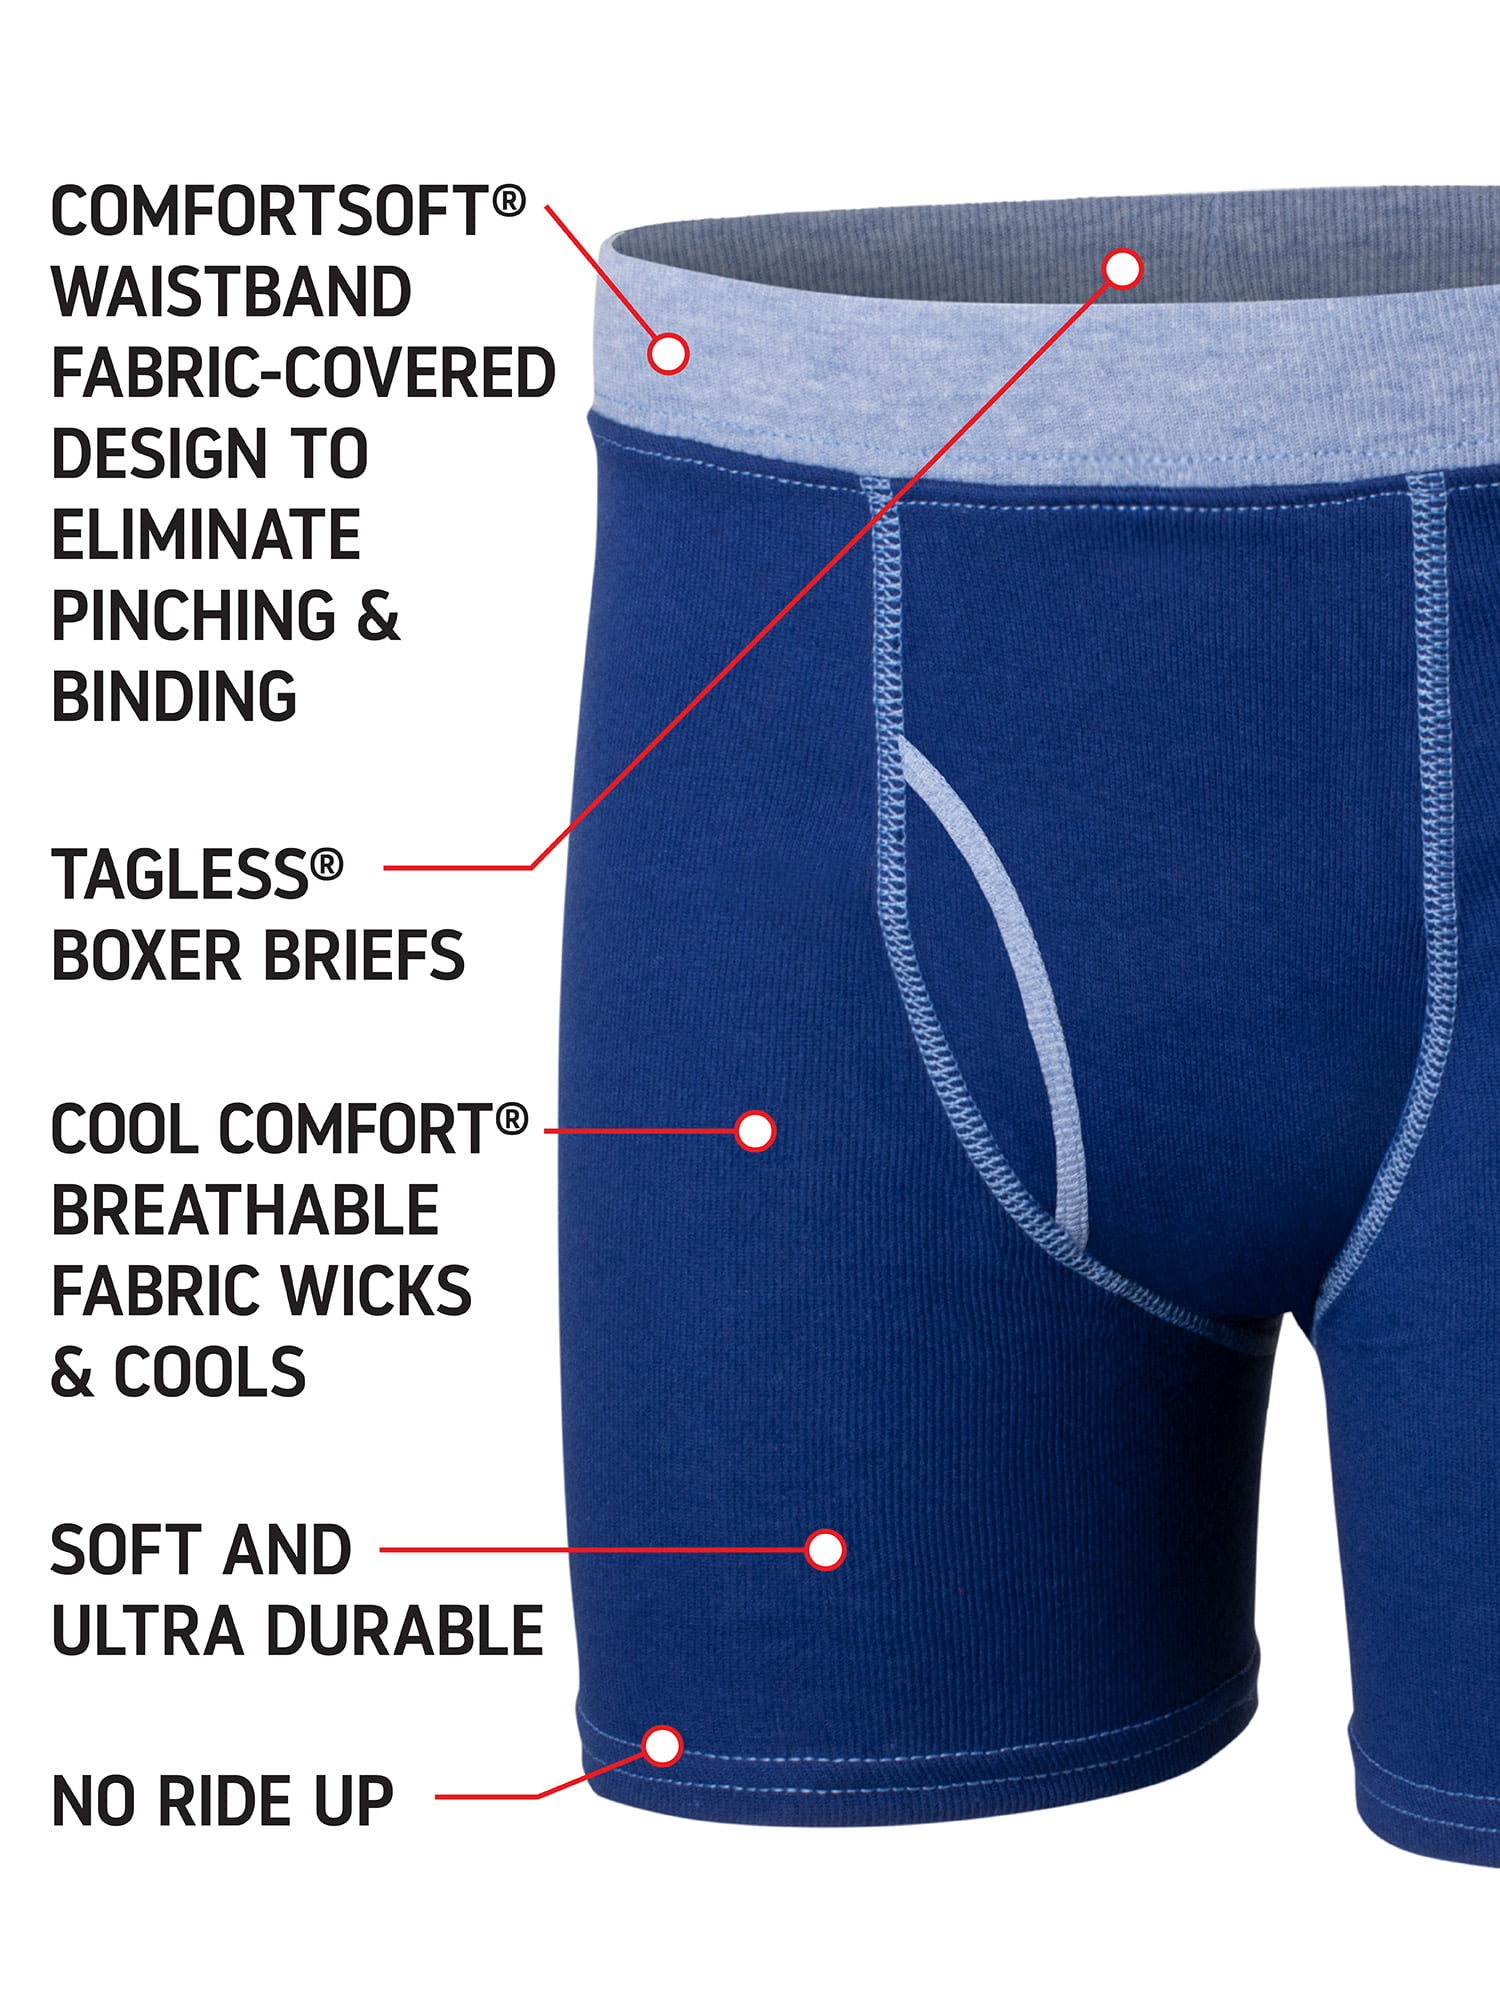 Hanes Boys Underwear, 7 Pack Tagless Boxer Briefs, Sizes S-XL